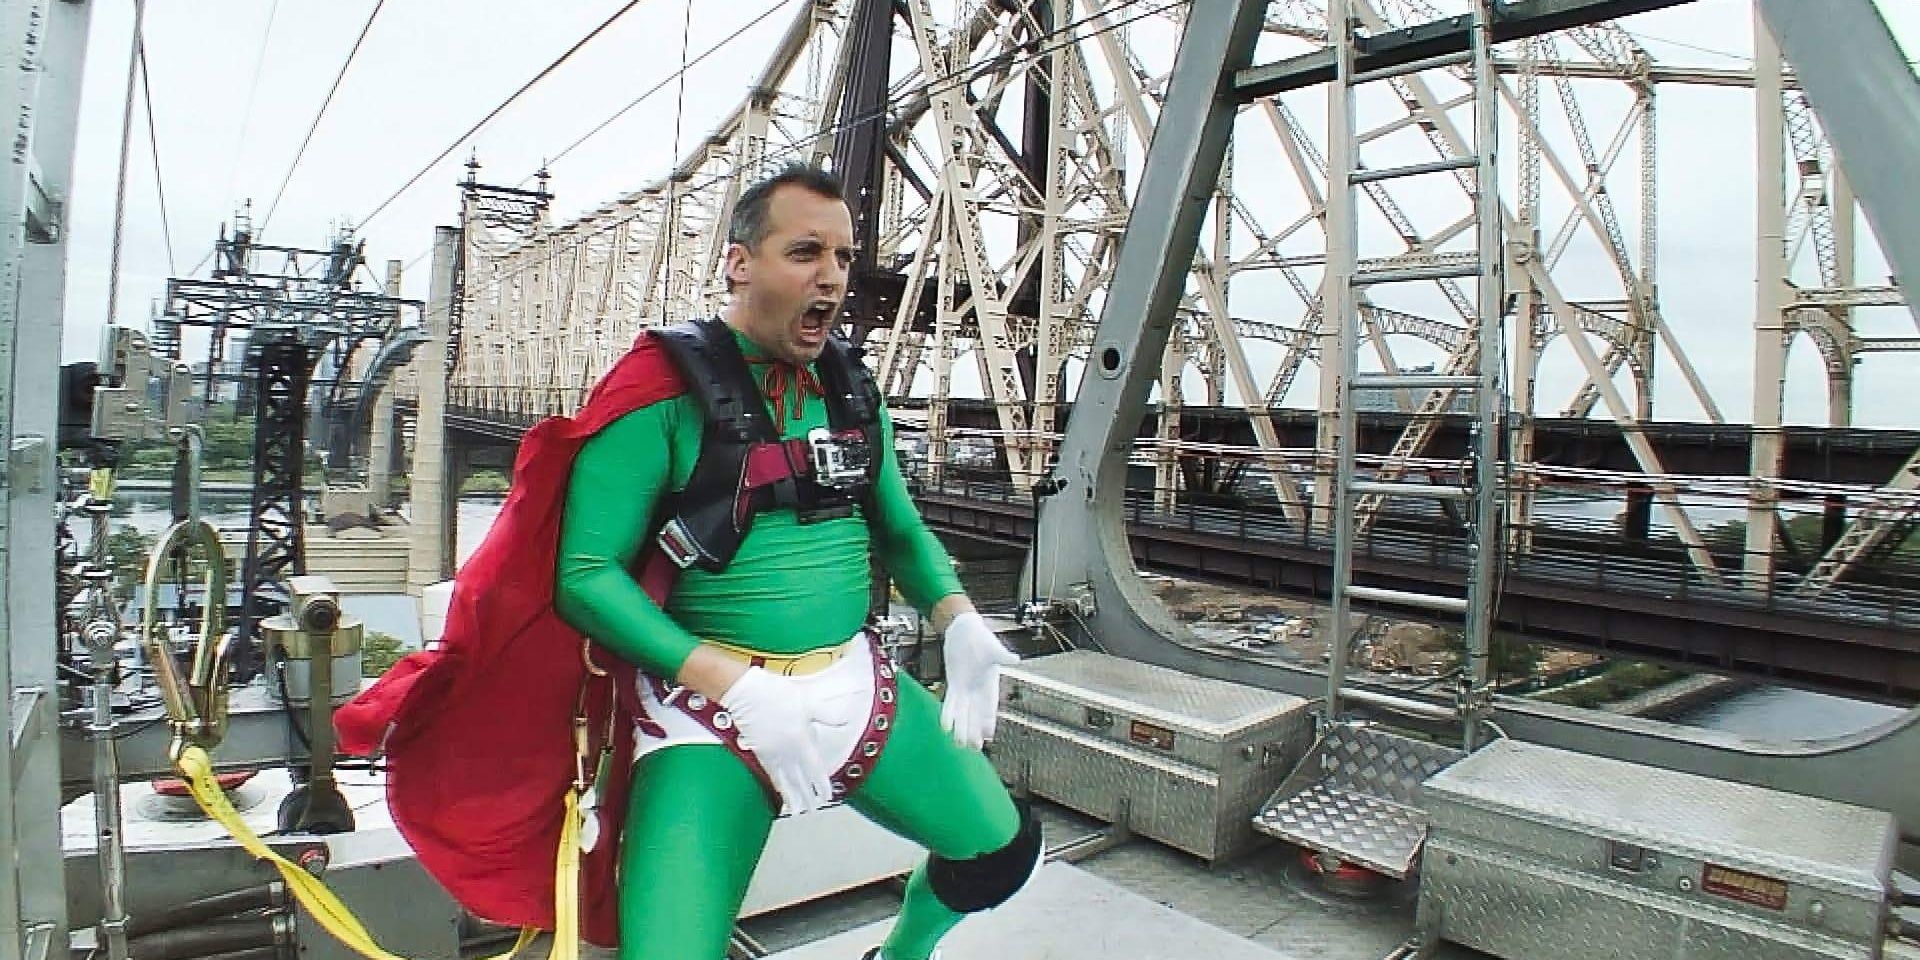 Joe as Captain Fatbelly on top of a bridge